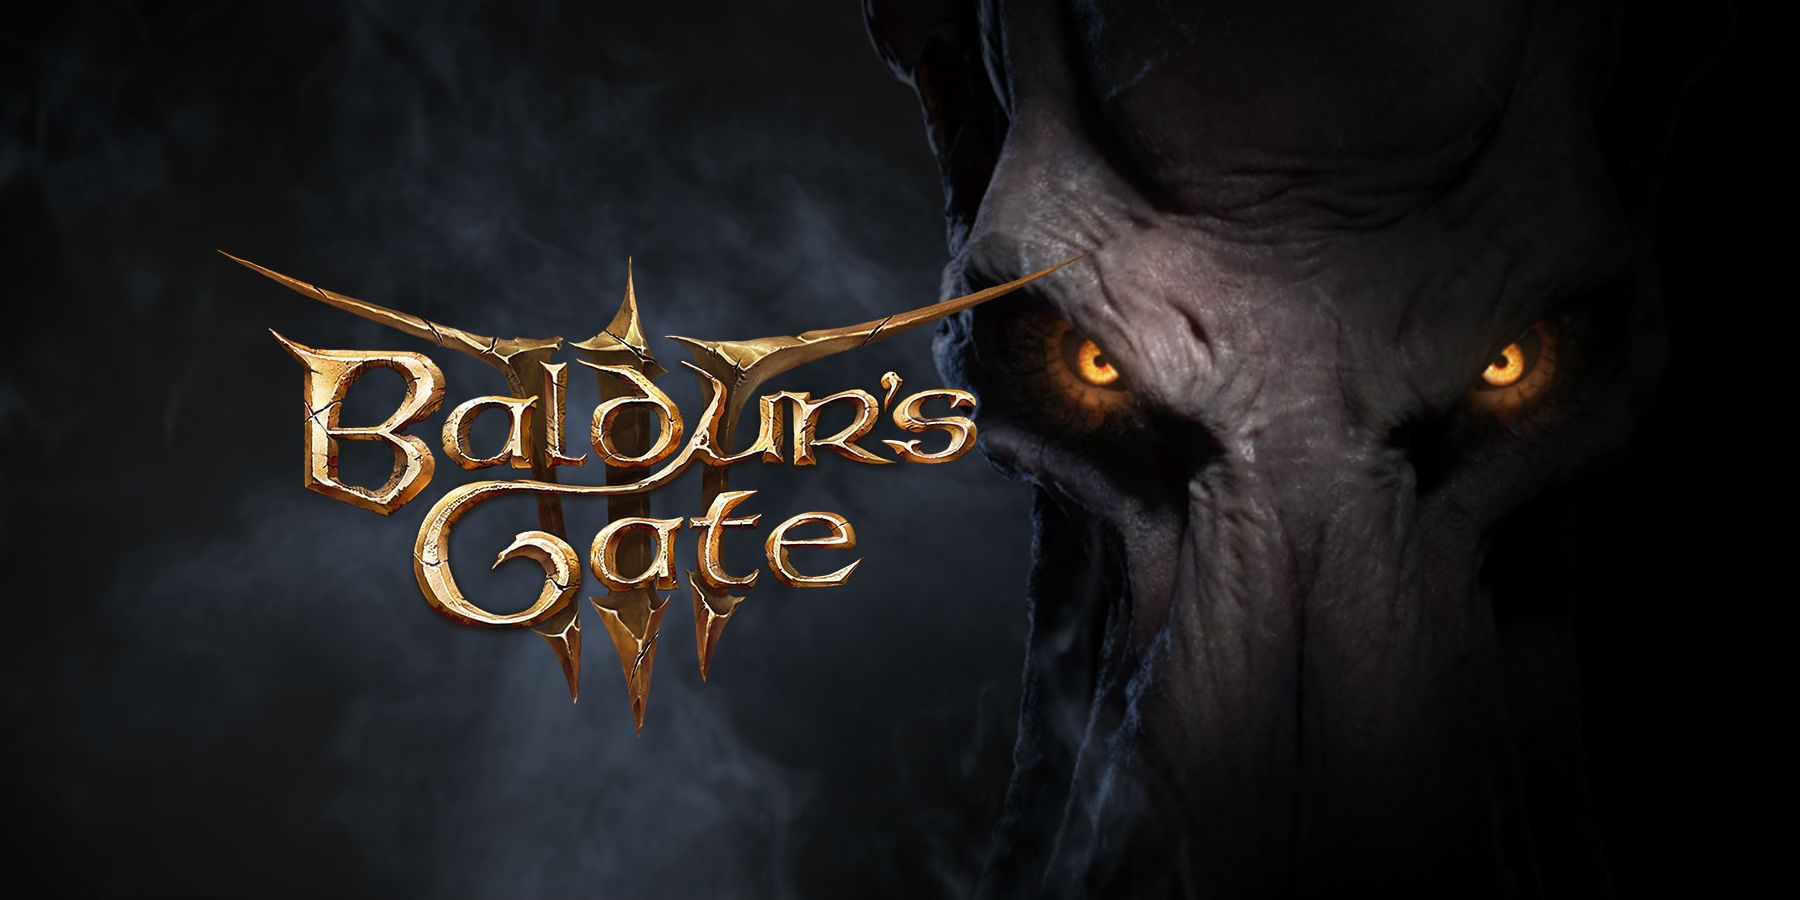 Baldurs-Gate-3-Steam.jpg